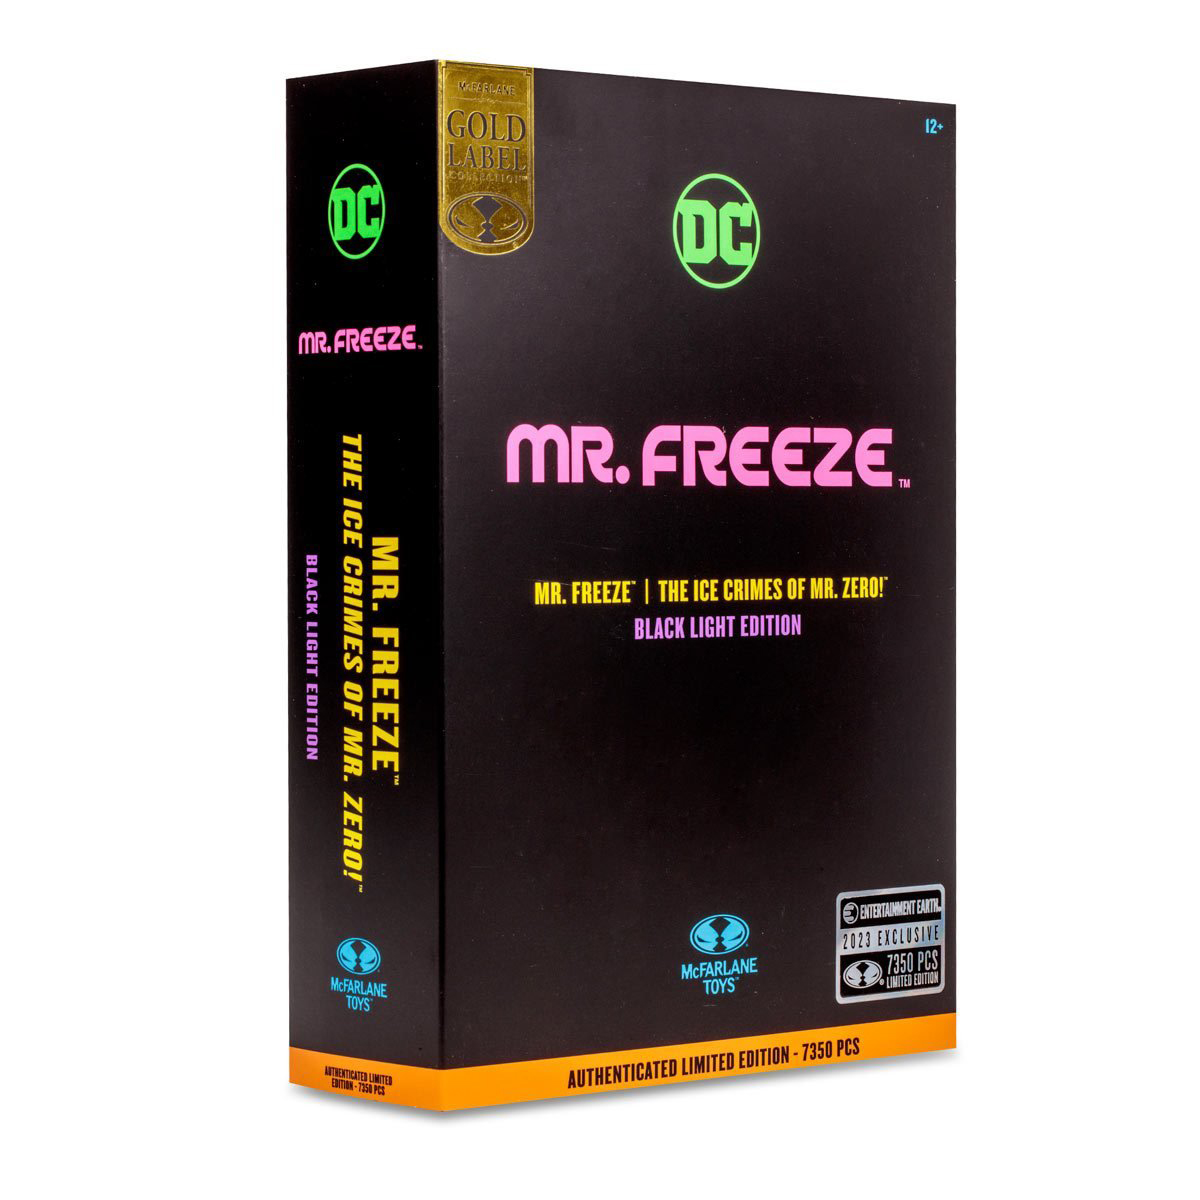 DC-Multiverse-Mr-Freeze-Black-Light-Gold-Label-Action-Figure-Entertainment-Earth-Exclusive-12